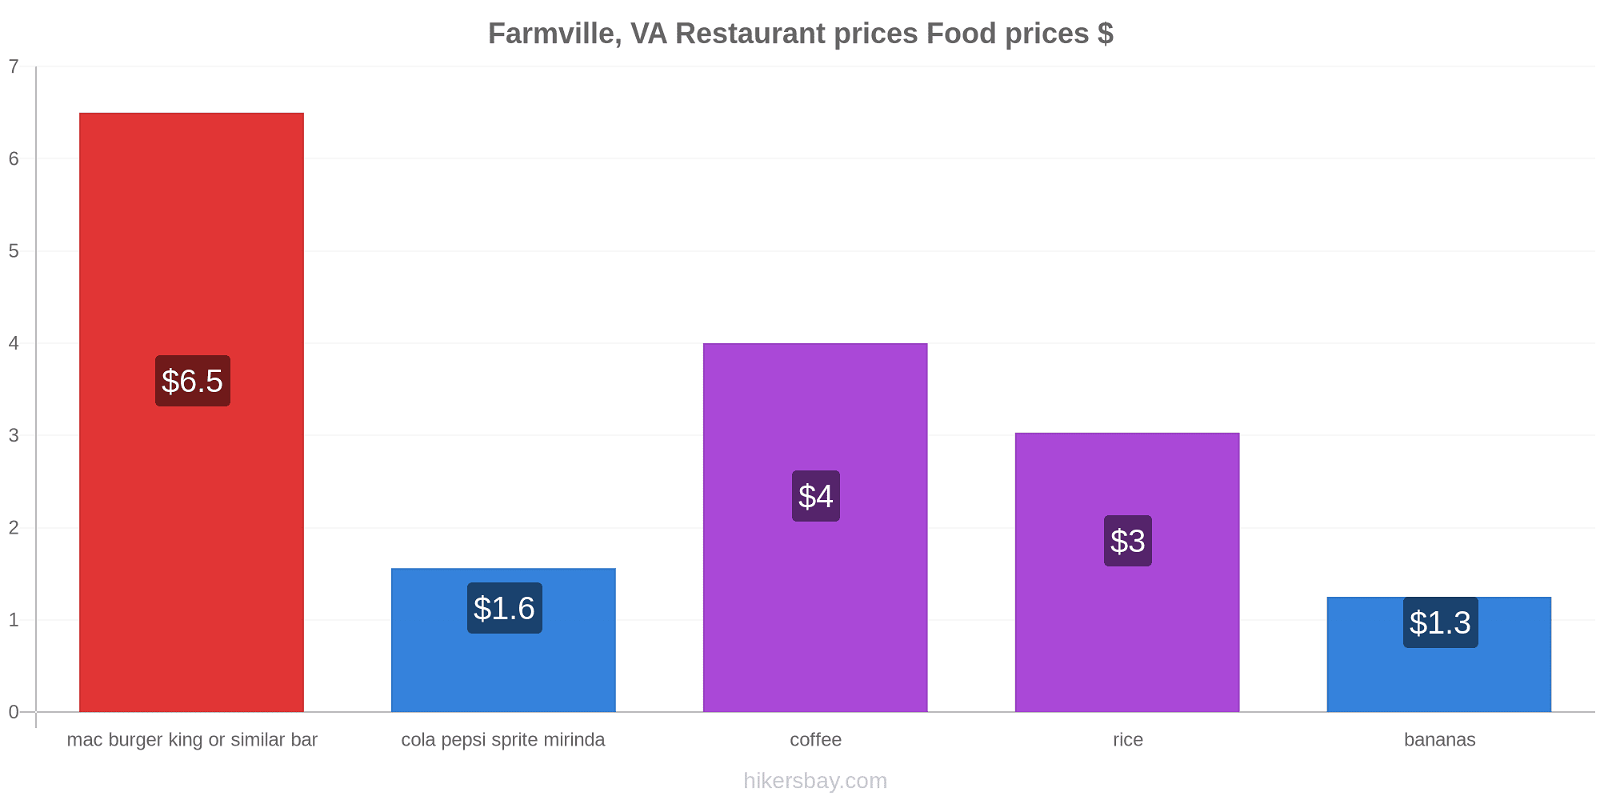 Farmville, VA price changes hikersbay.com